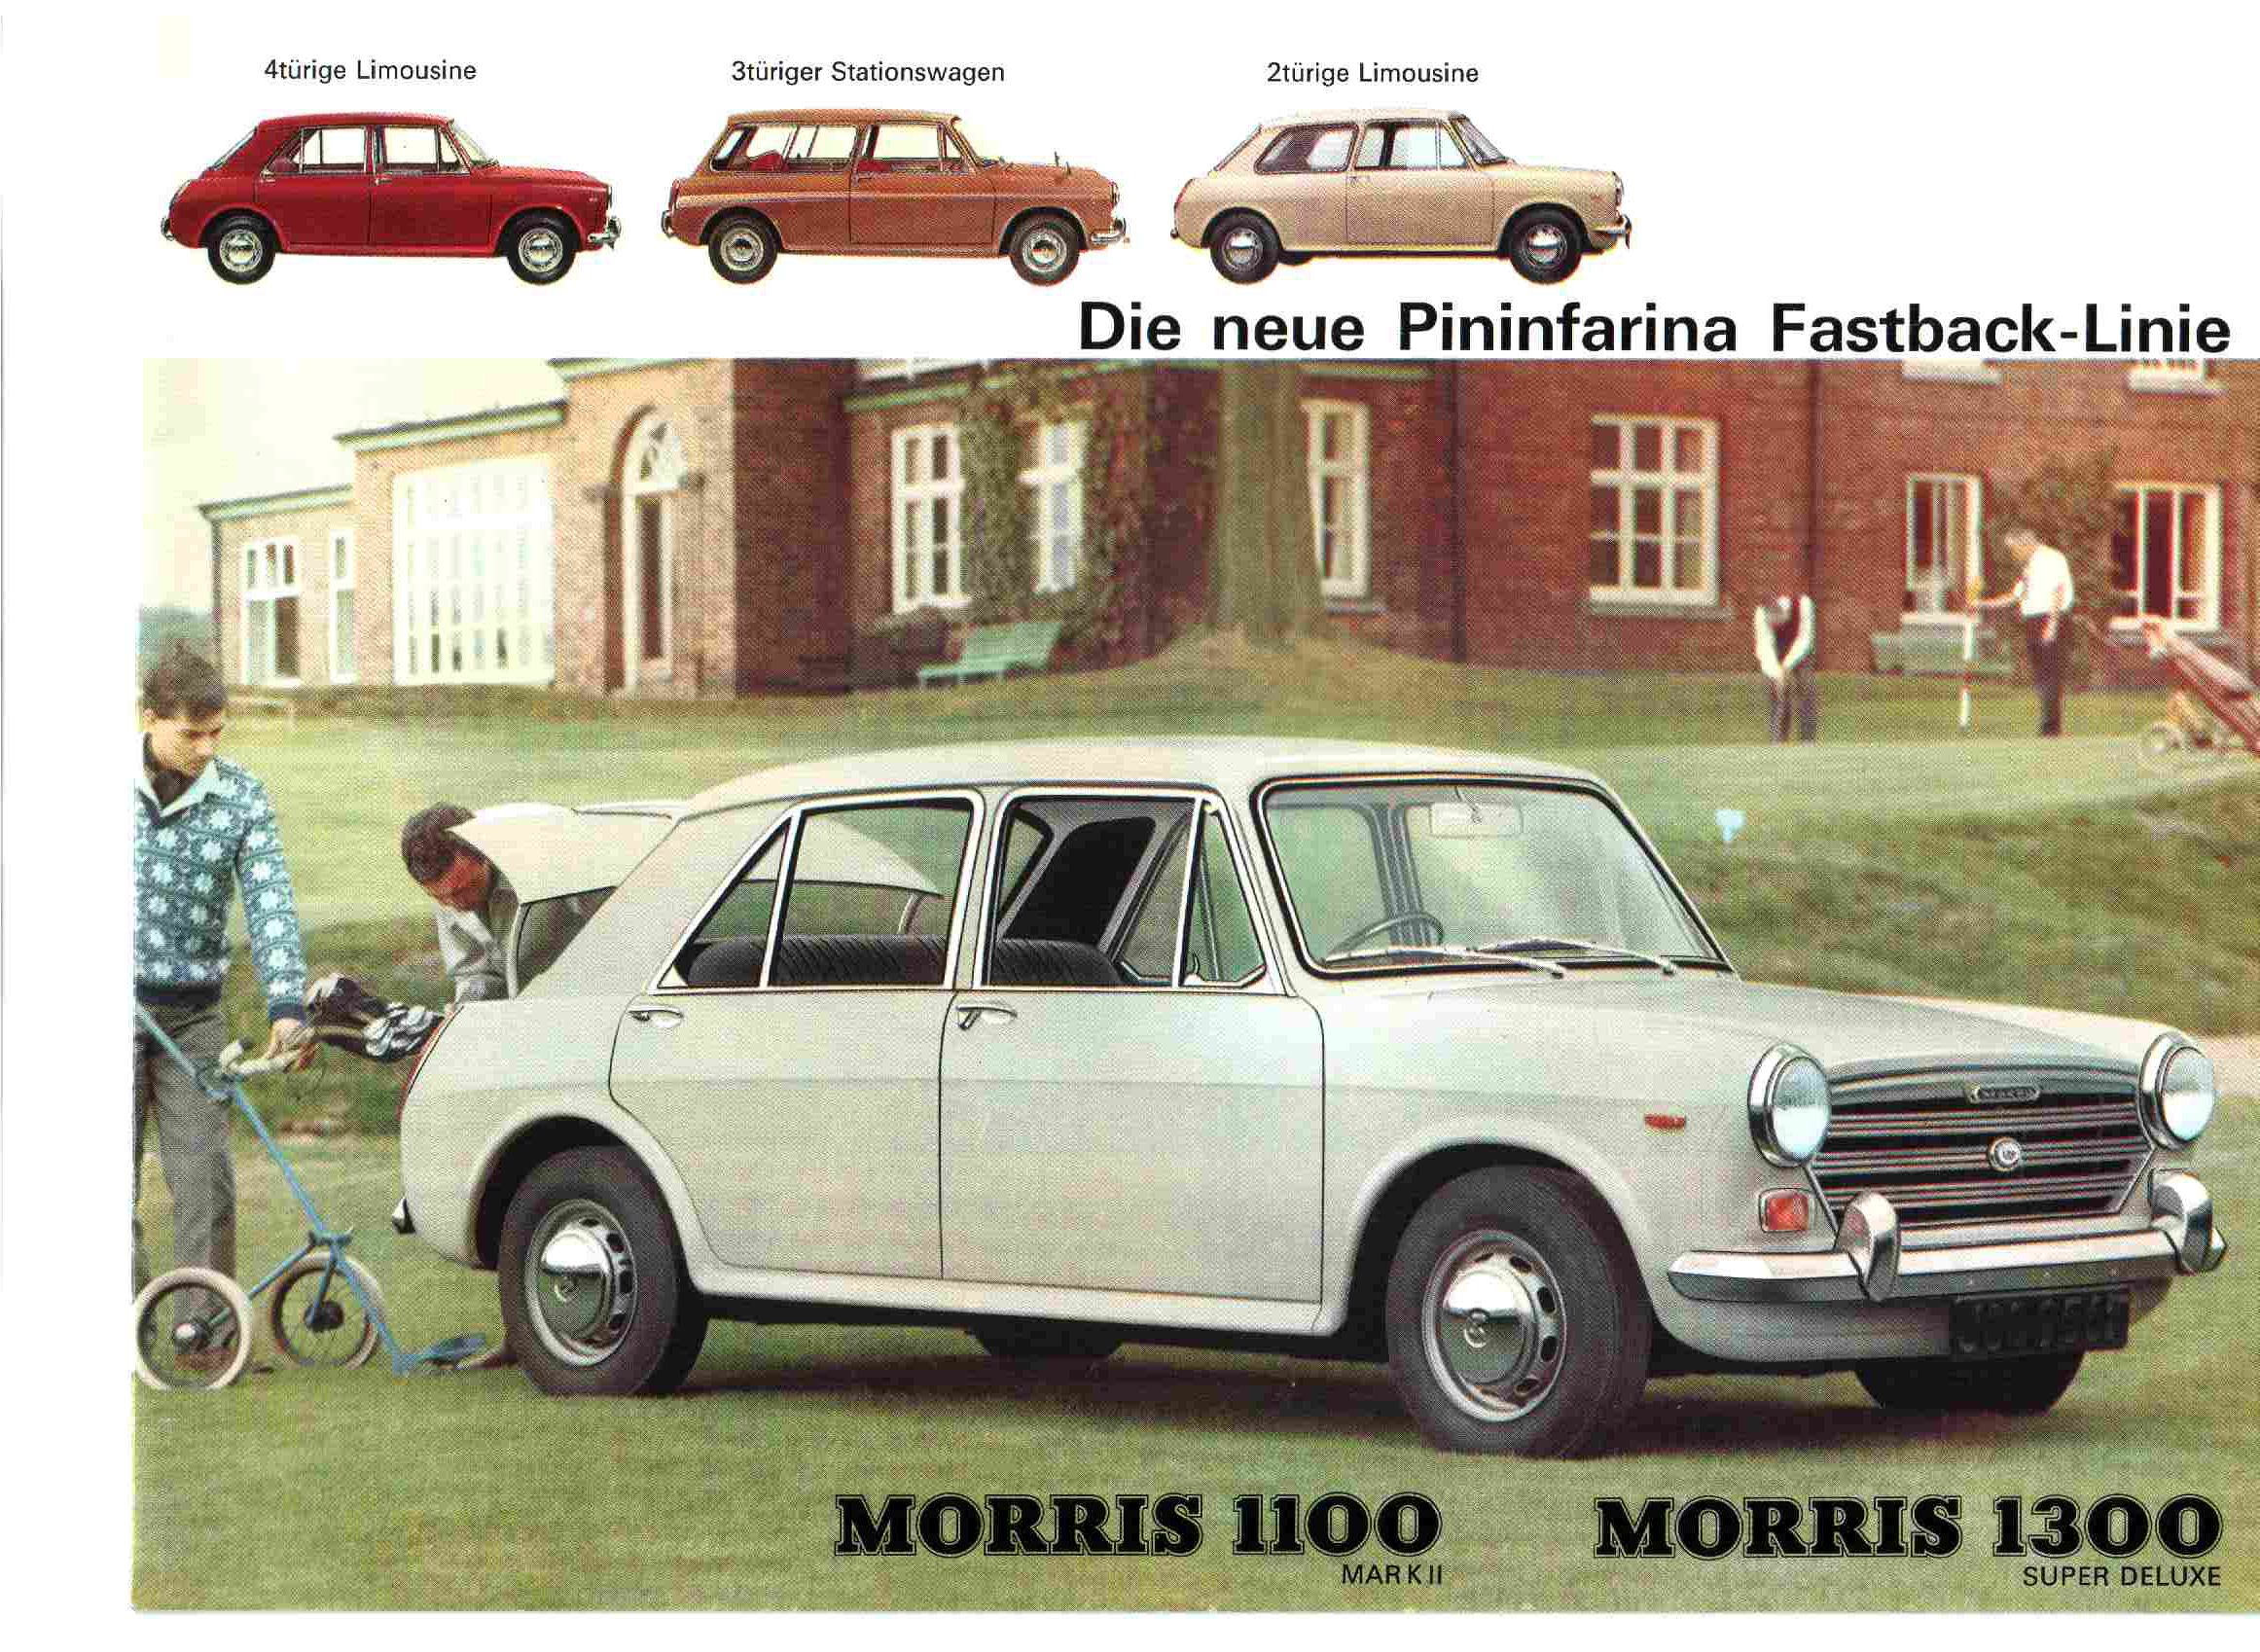 Morris 1300